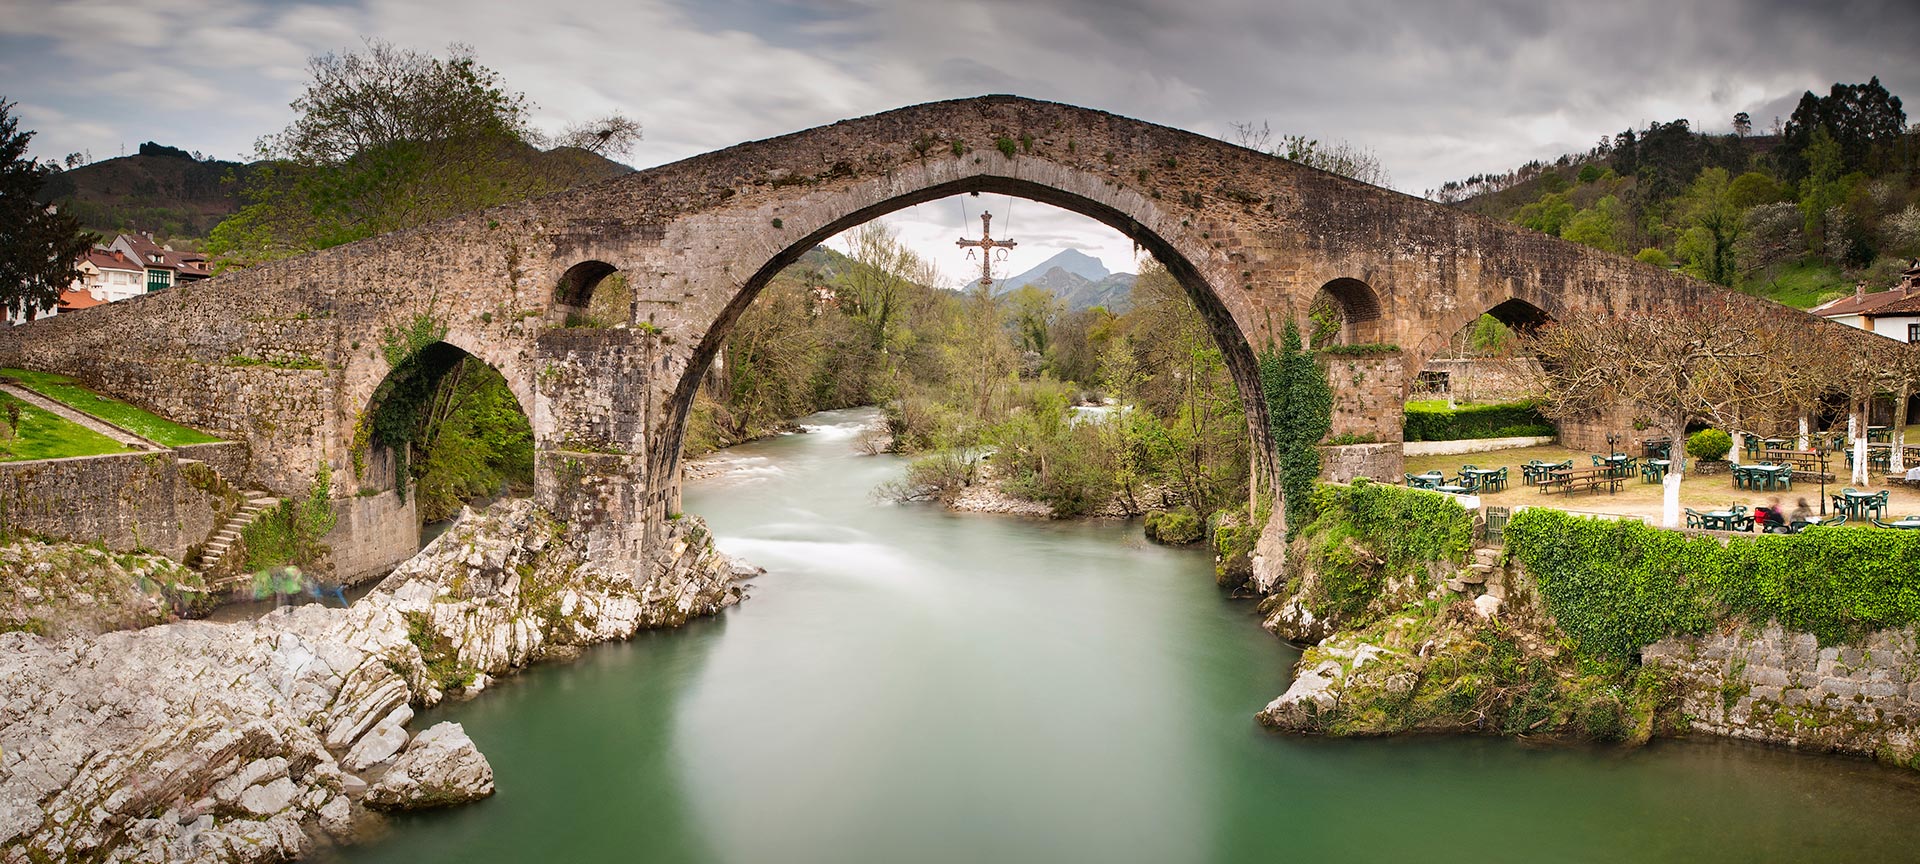 Roman bridge over the River Sella. Cangas de Onís